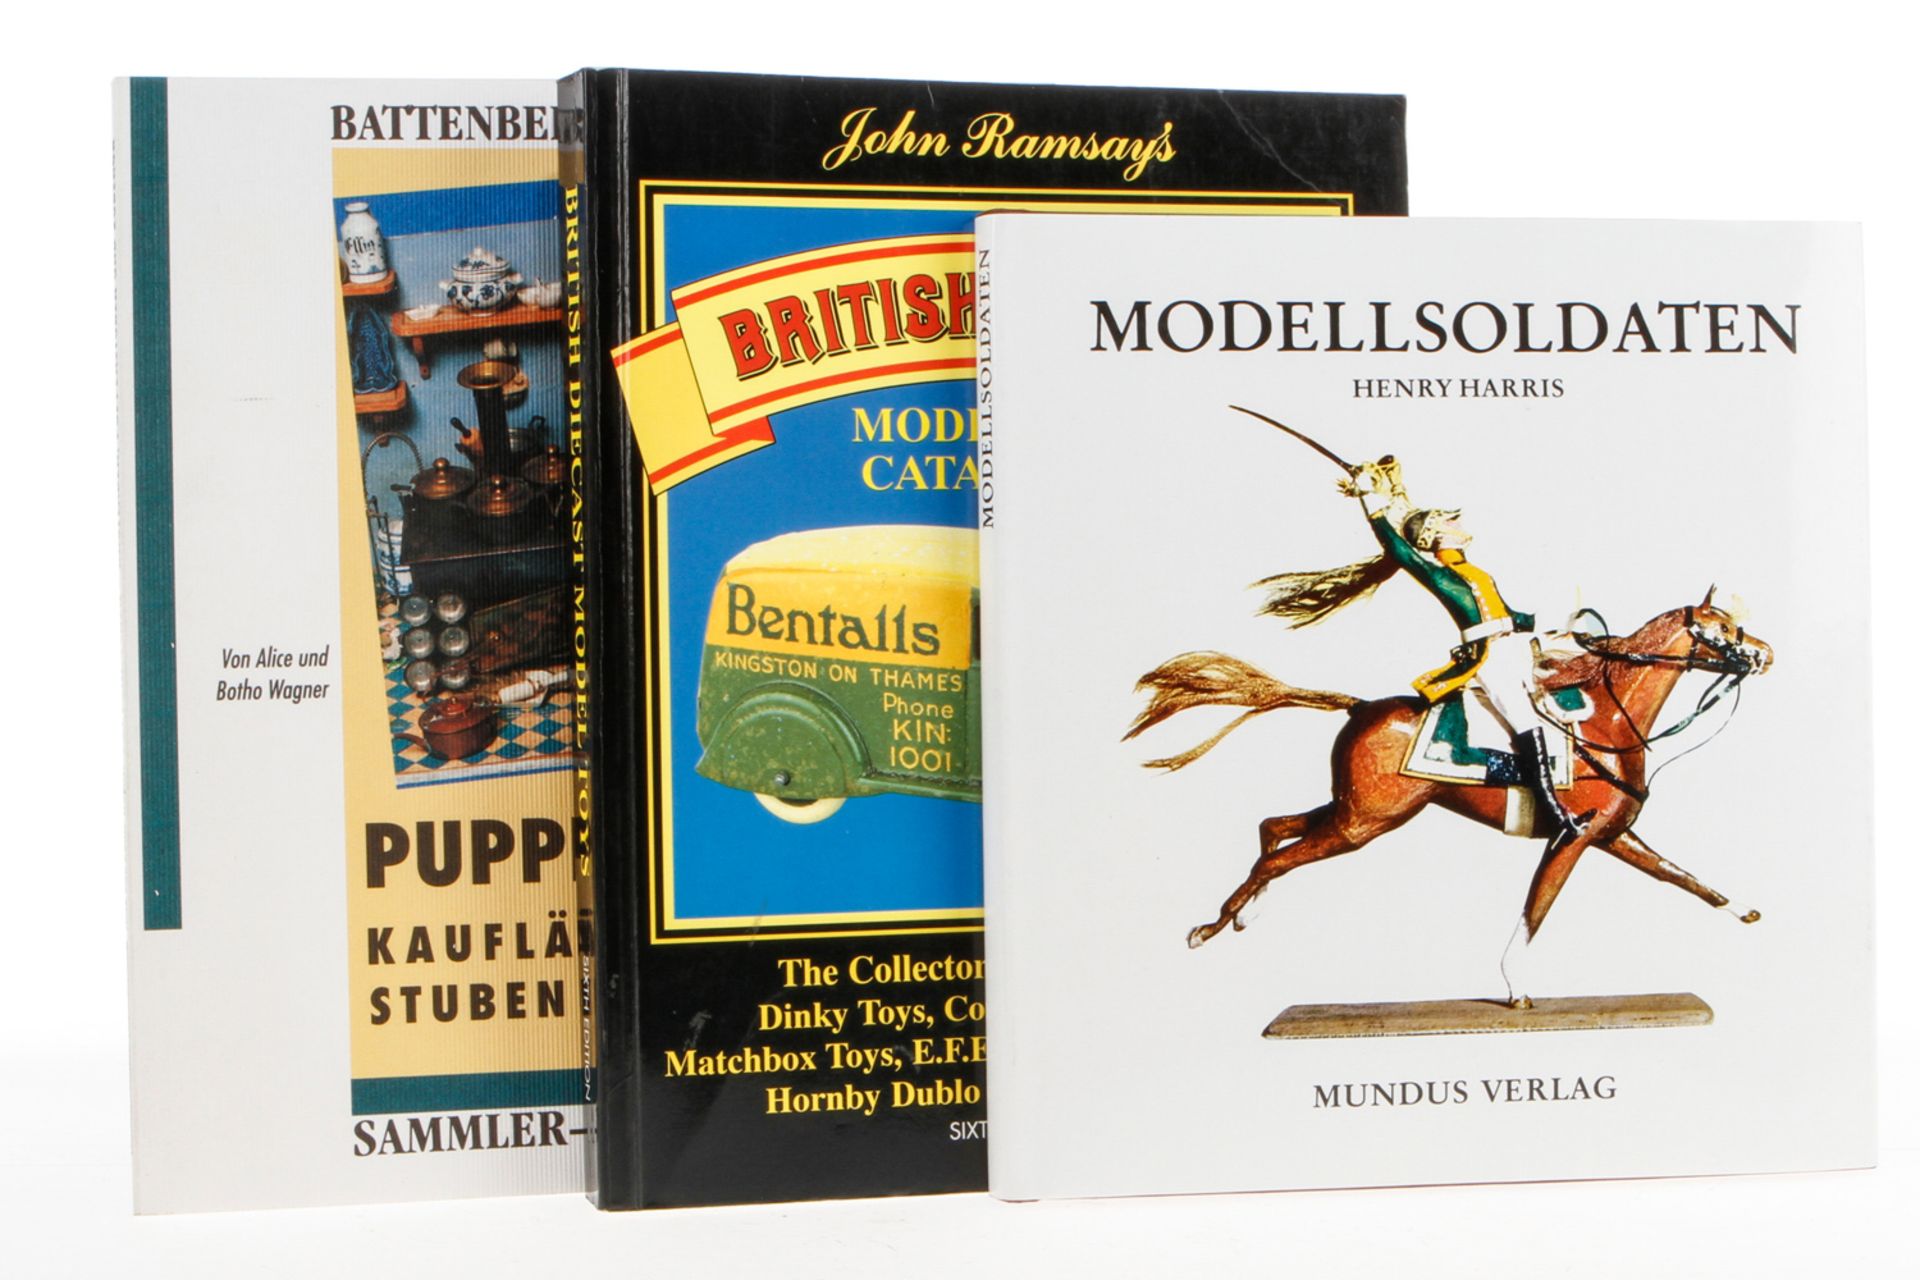 3 Bücher "Modellsoldaten", "British Diecast" und "Puppenküchen", Alterungsspuren